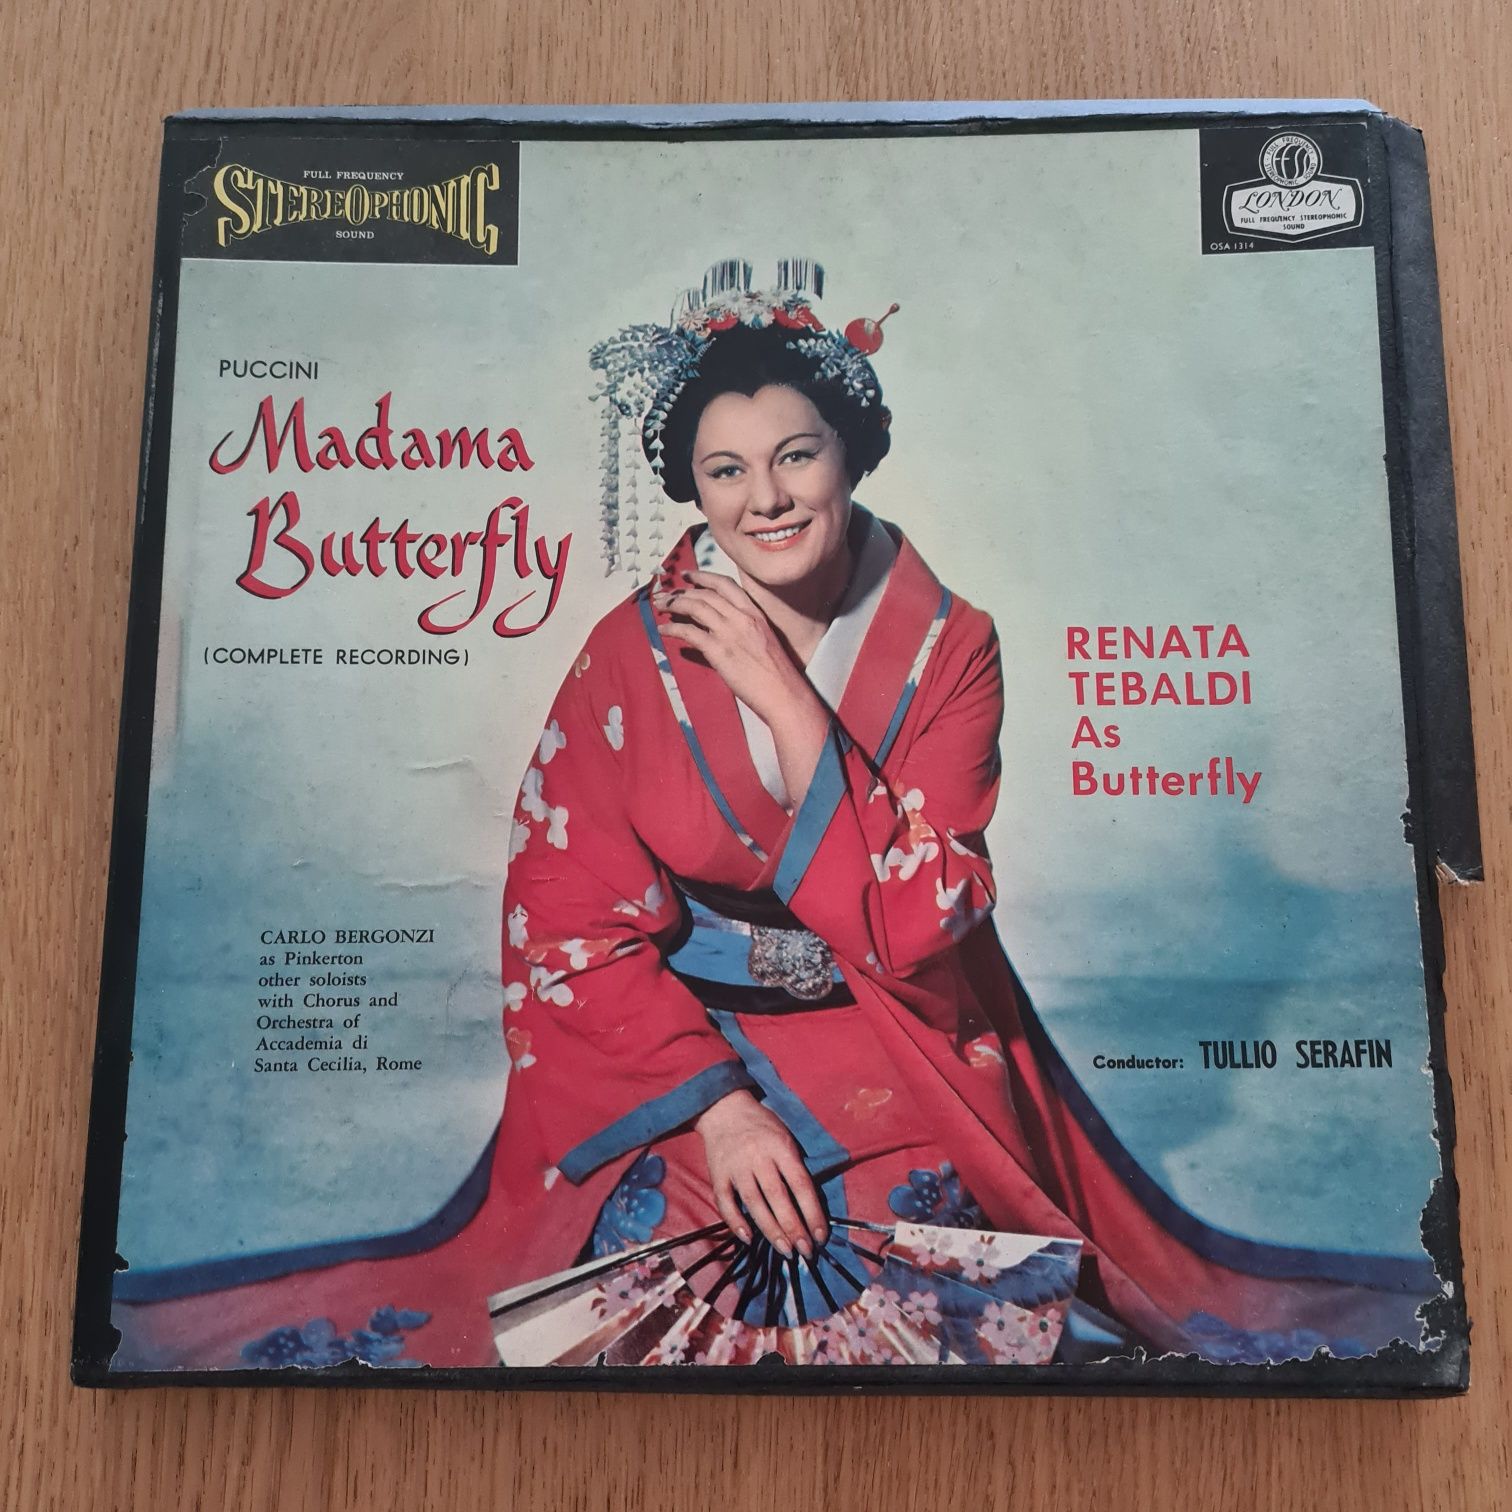 Vinil Completo Puccini Madama Butterfly 1952 VINTAGE E RARO